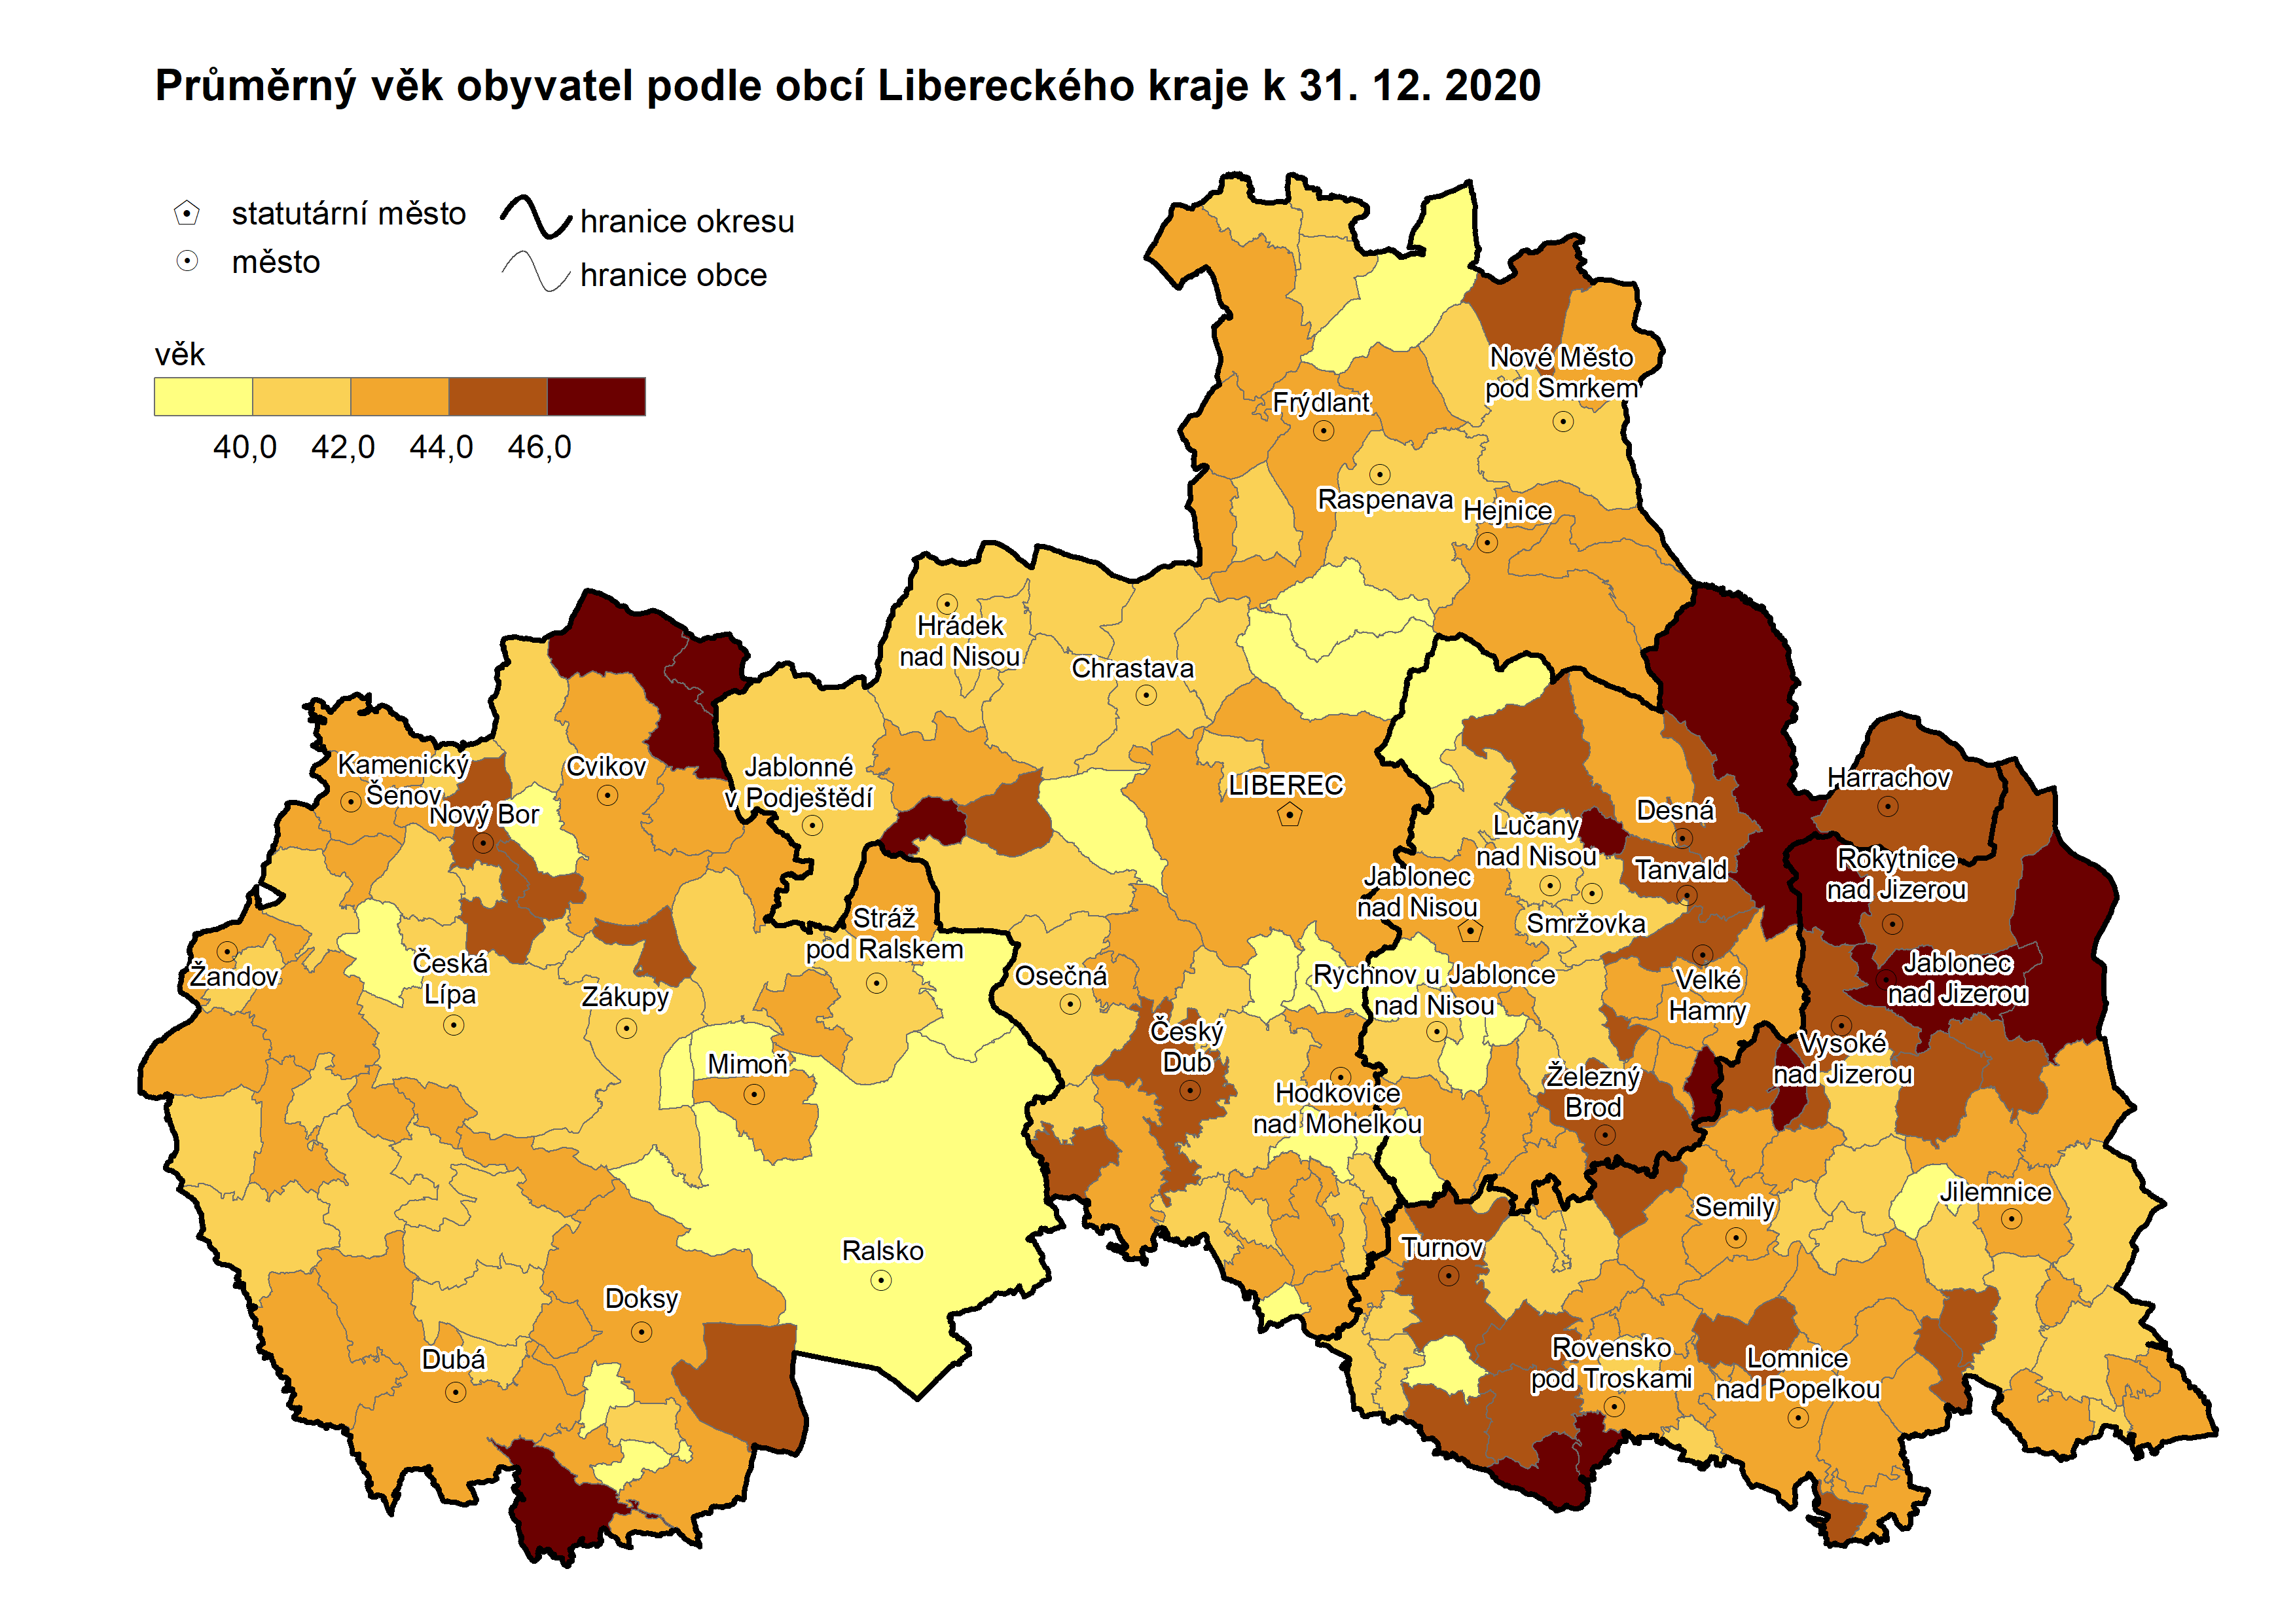 Kartogram: Průměrný věk obyvatel obcí Libereckého kraje